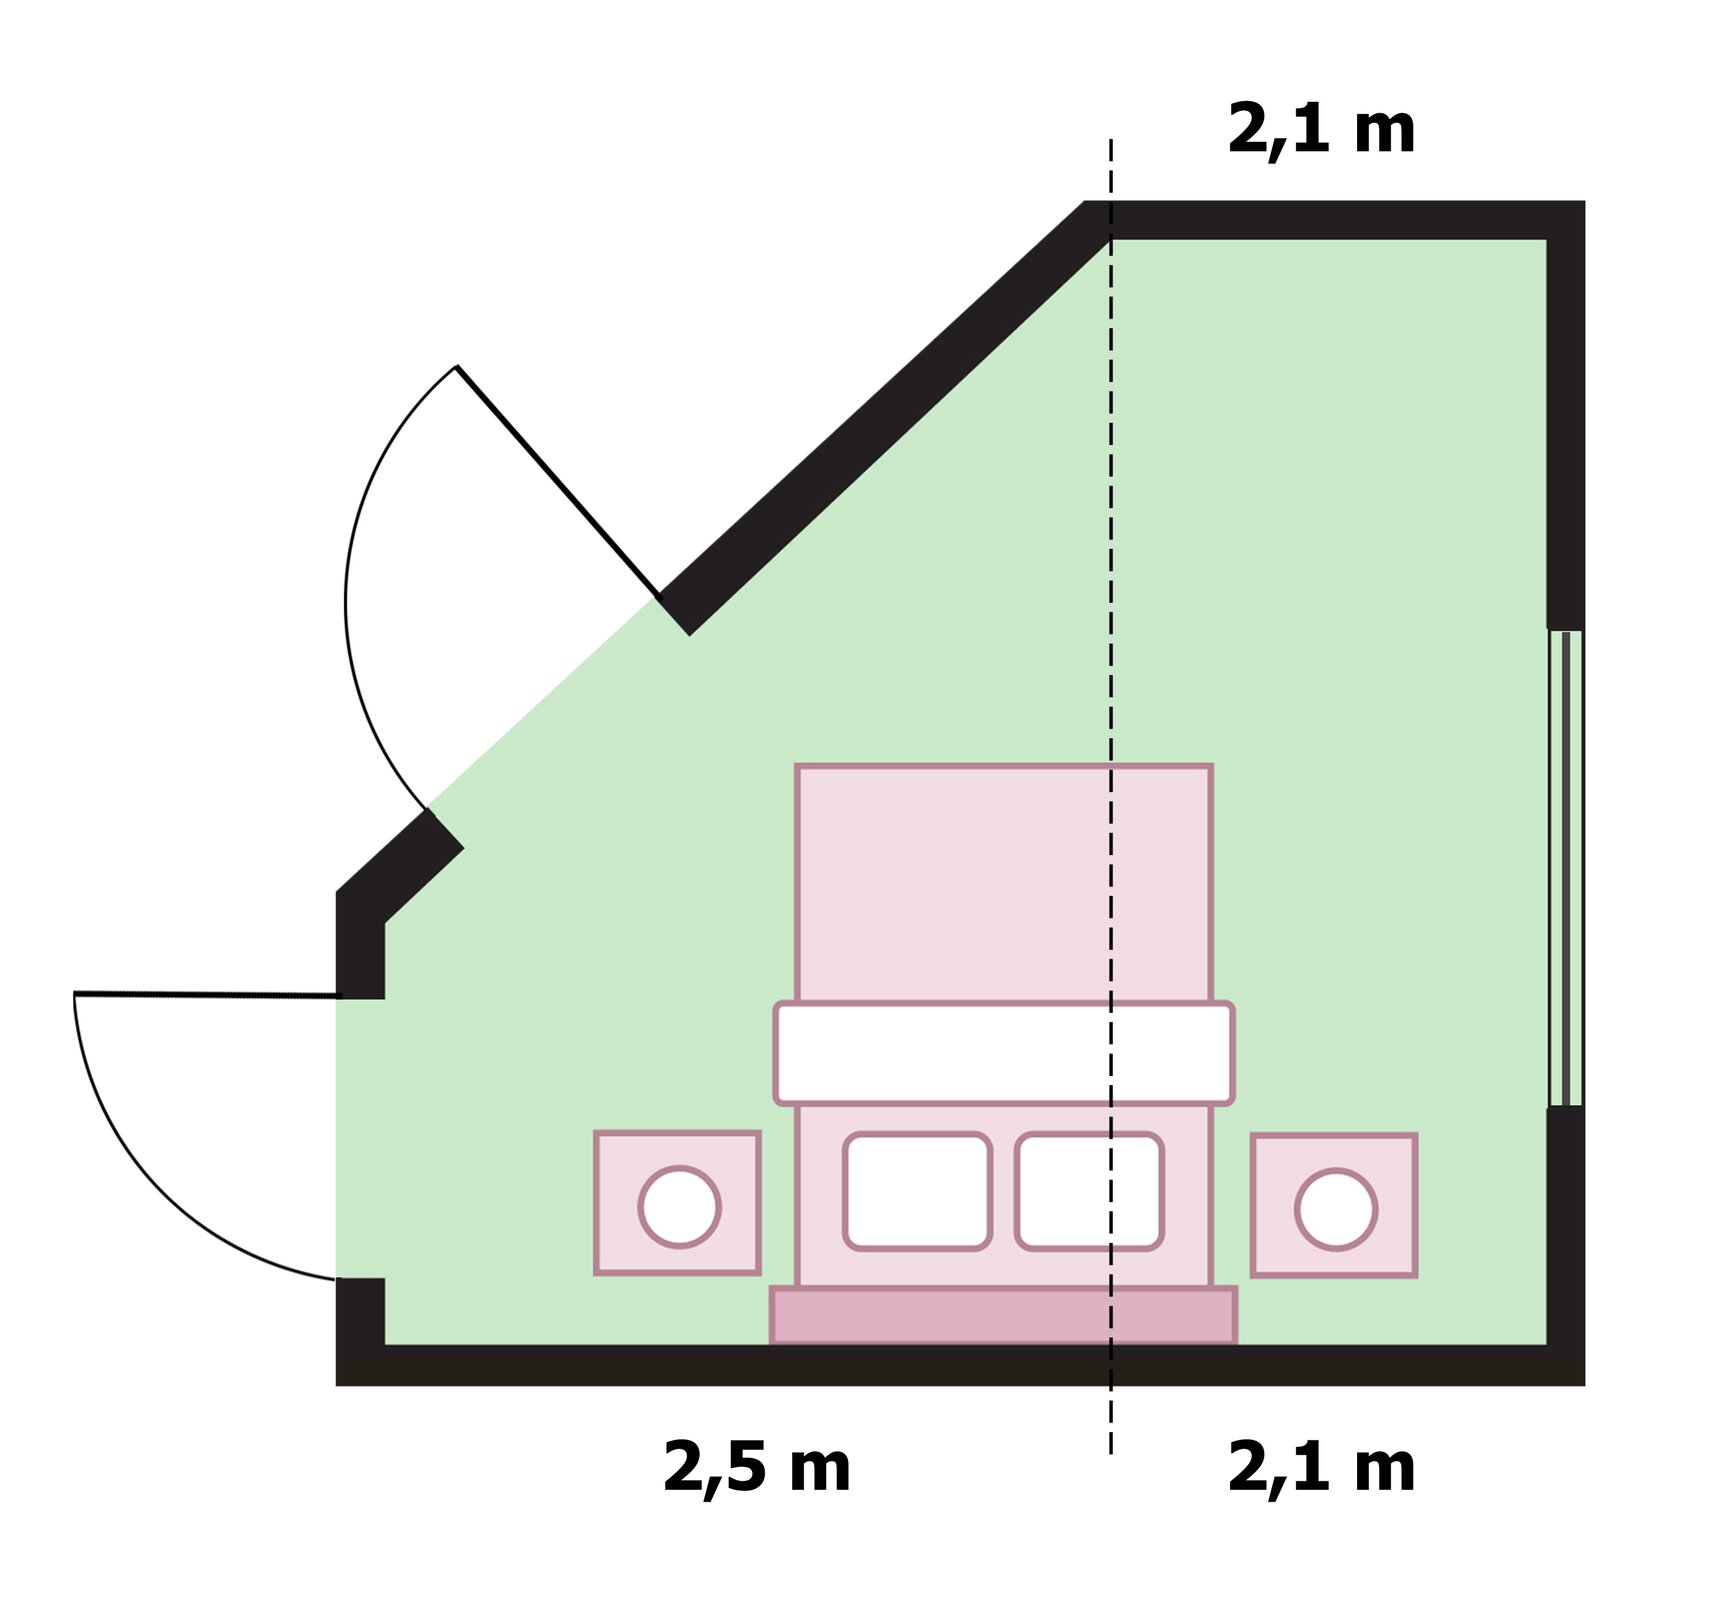 Rysunek podłogi mieszkania w kształcie figury złożonej z trapezu prostokątnego o podstawach 1,4 m i 2,6 m oraz wysokości 2,5 m i prostokąta o bokach 2,1 m i 2,6 m. Rysunek podłogi mieszkania z oznaczonymi wymiarami ścian do malowania 2,1 m, 2,1 m i 2,5 m.